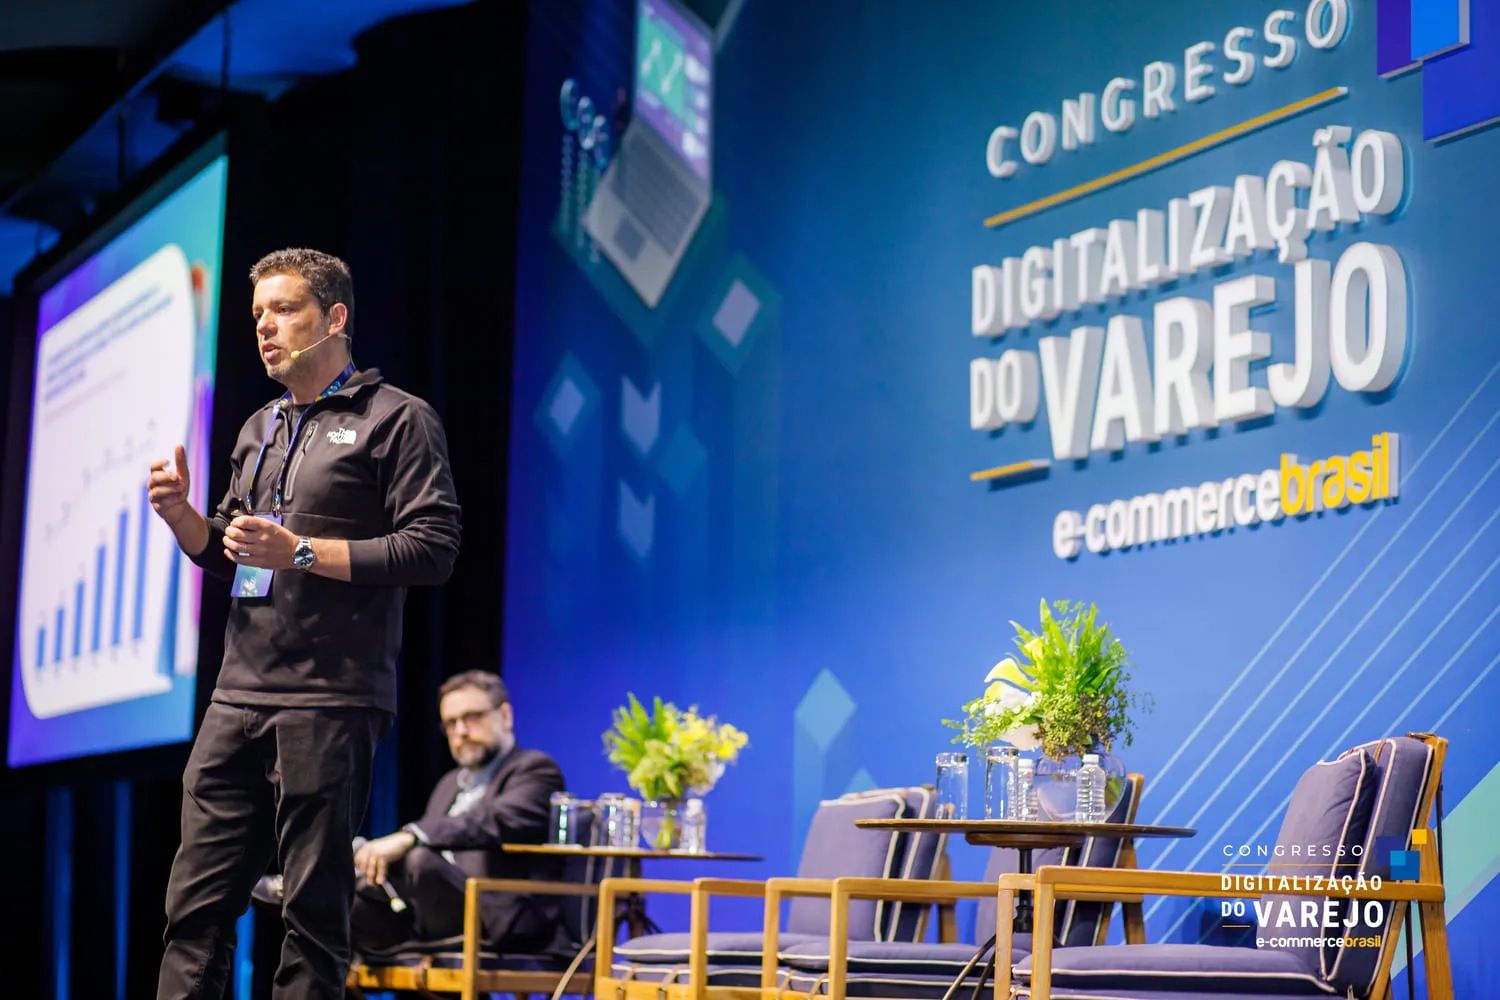 Carlos Alves, VP executivo de Tecnologia da Cielo - Pagamentos - Congresso Digitalização do Varejo 24'